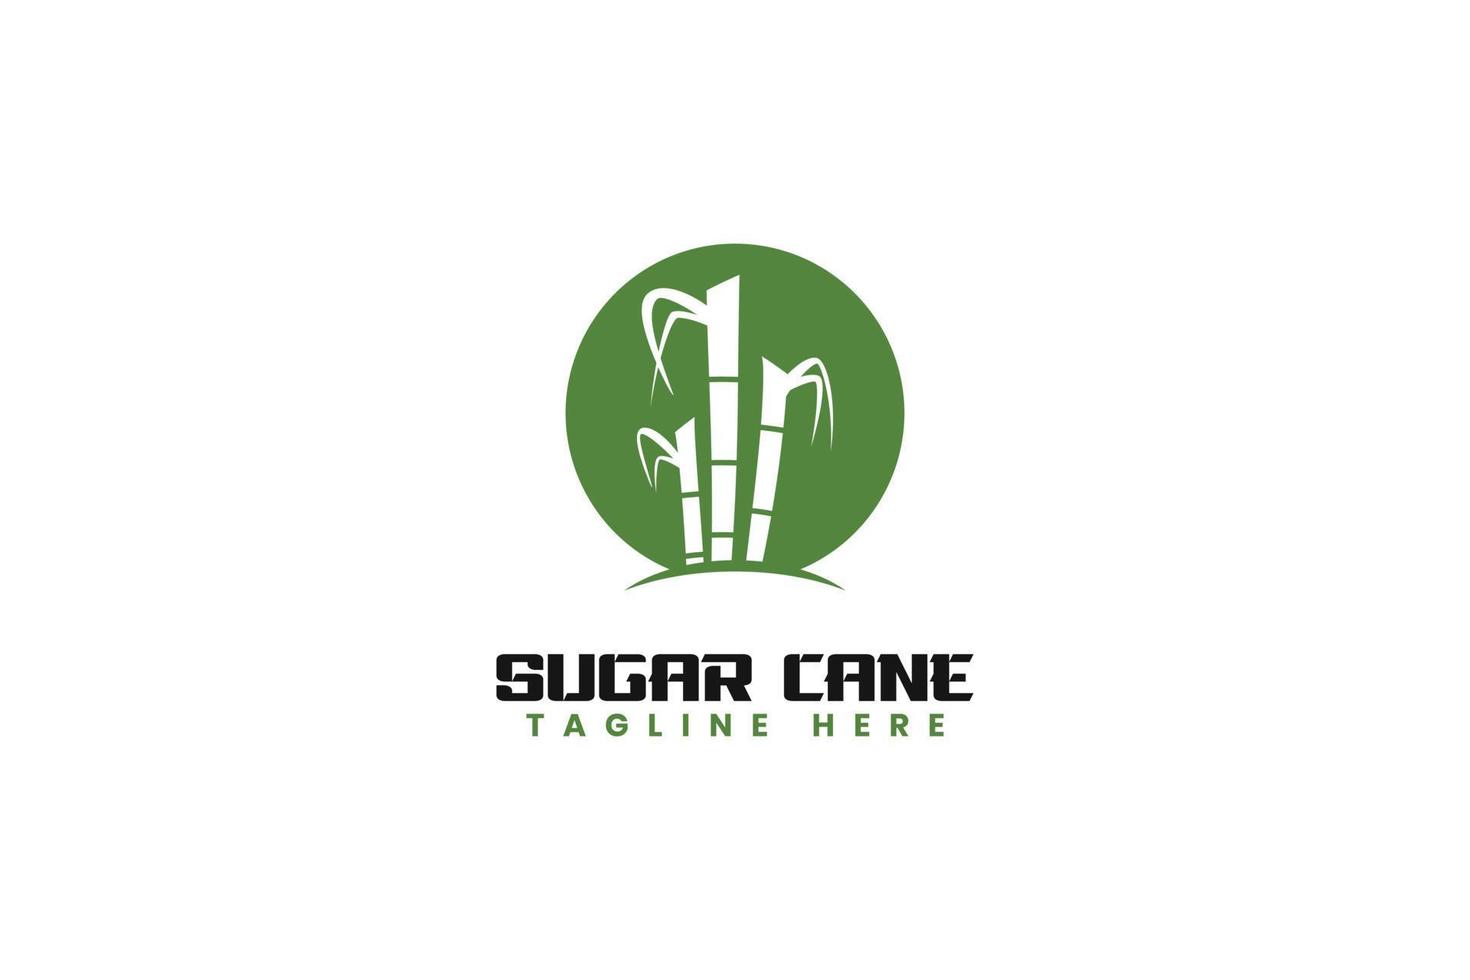 Sugar cane logo design vector